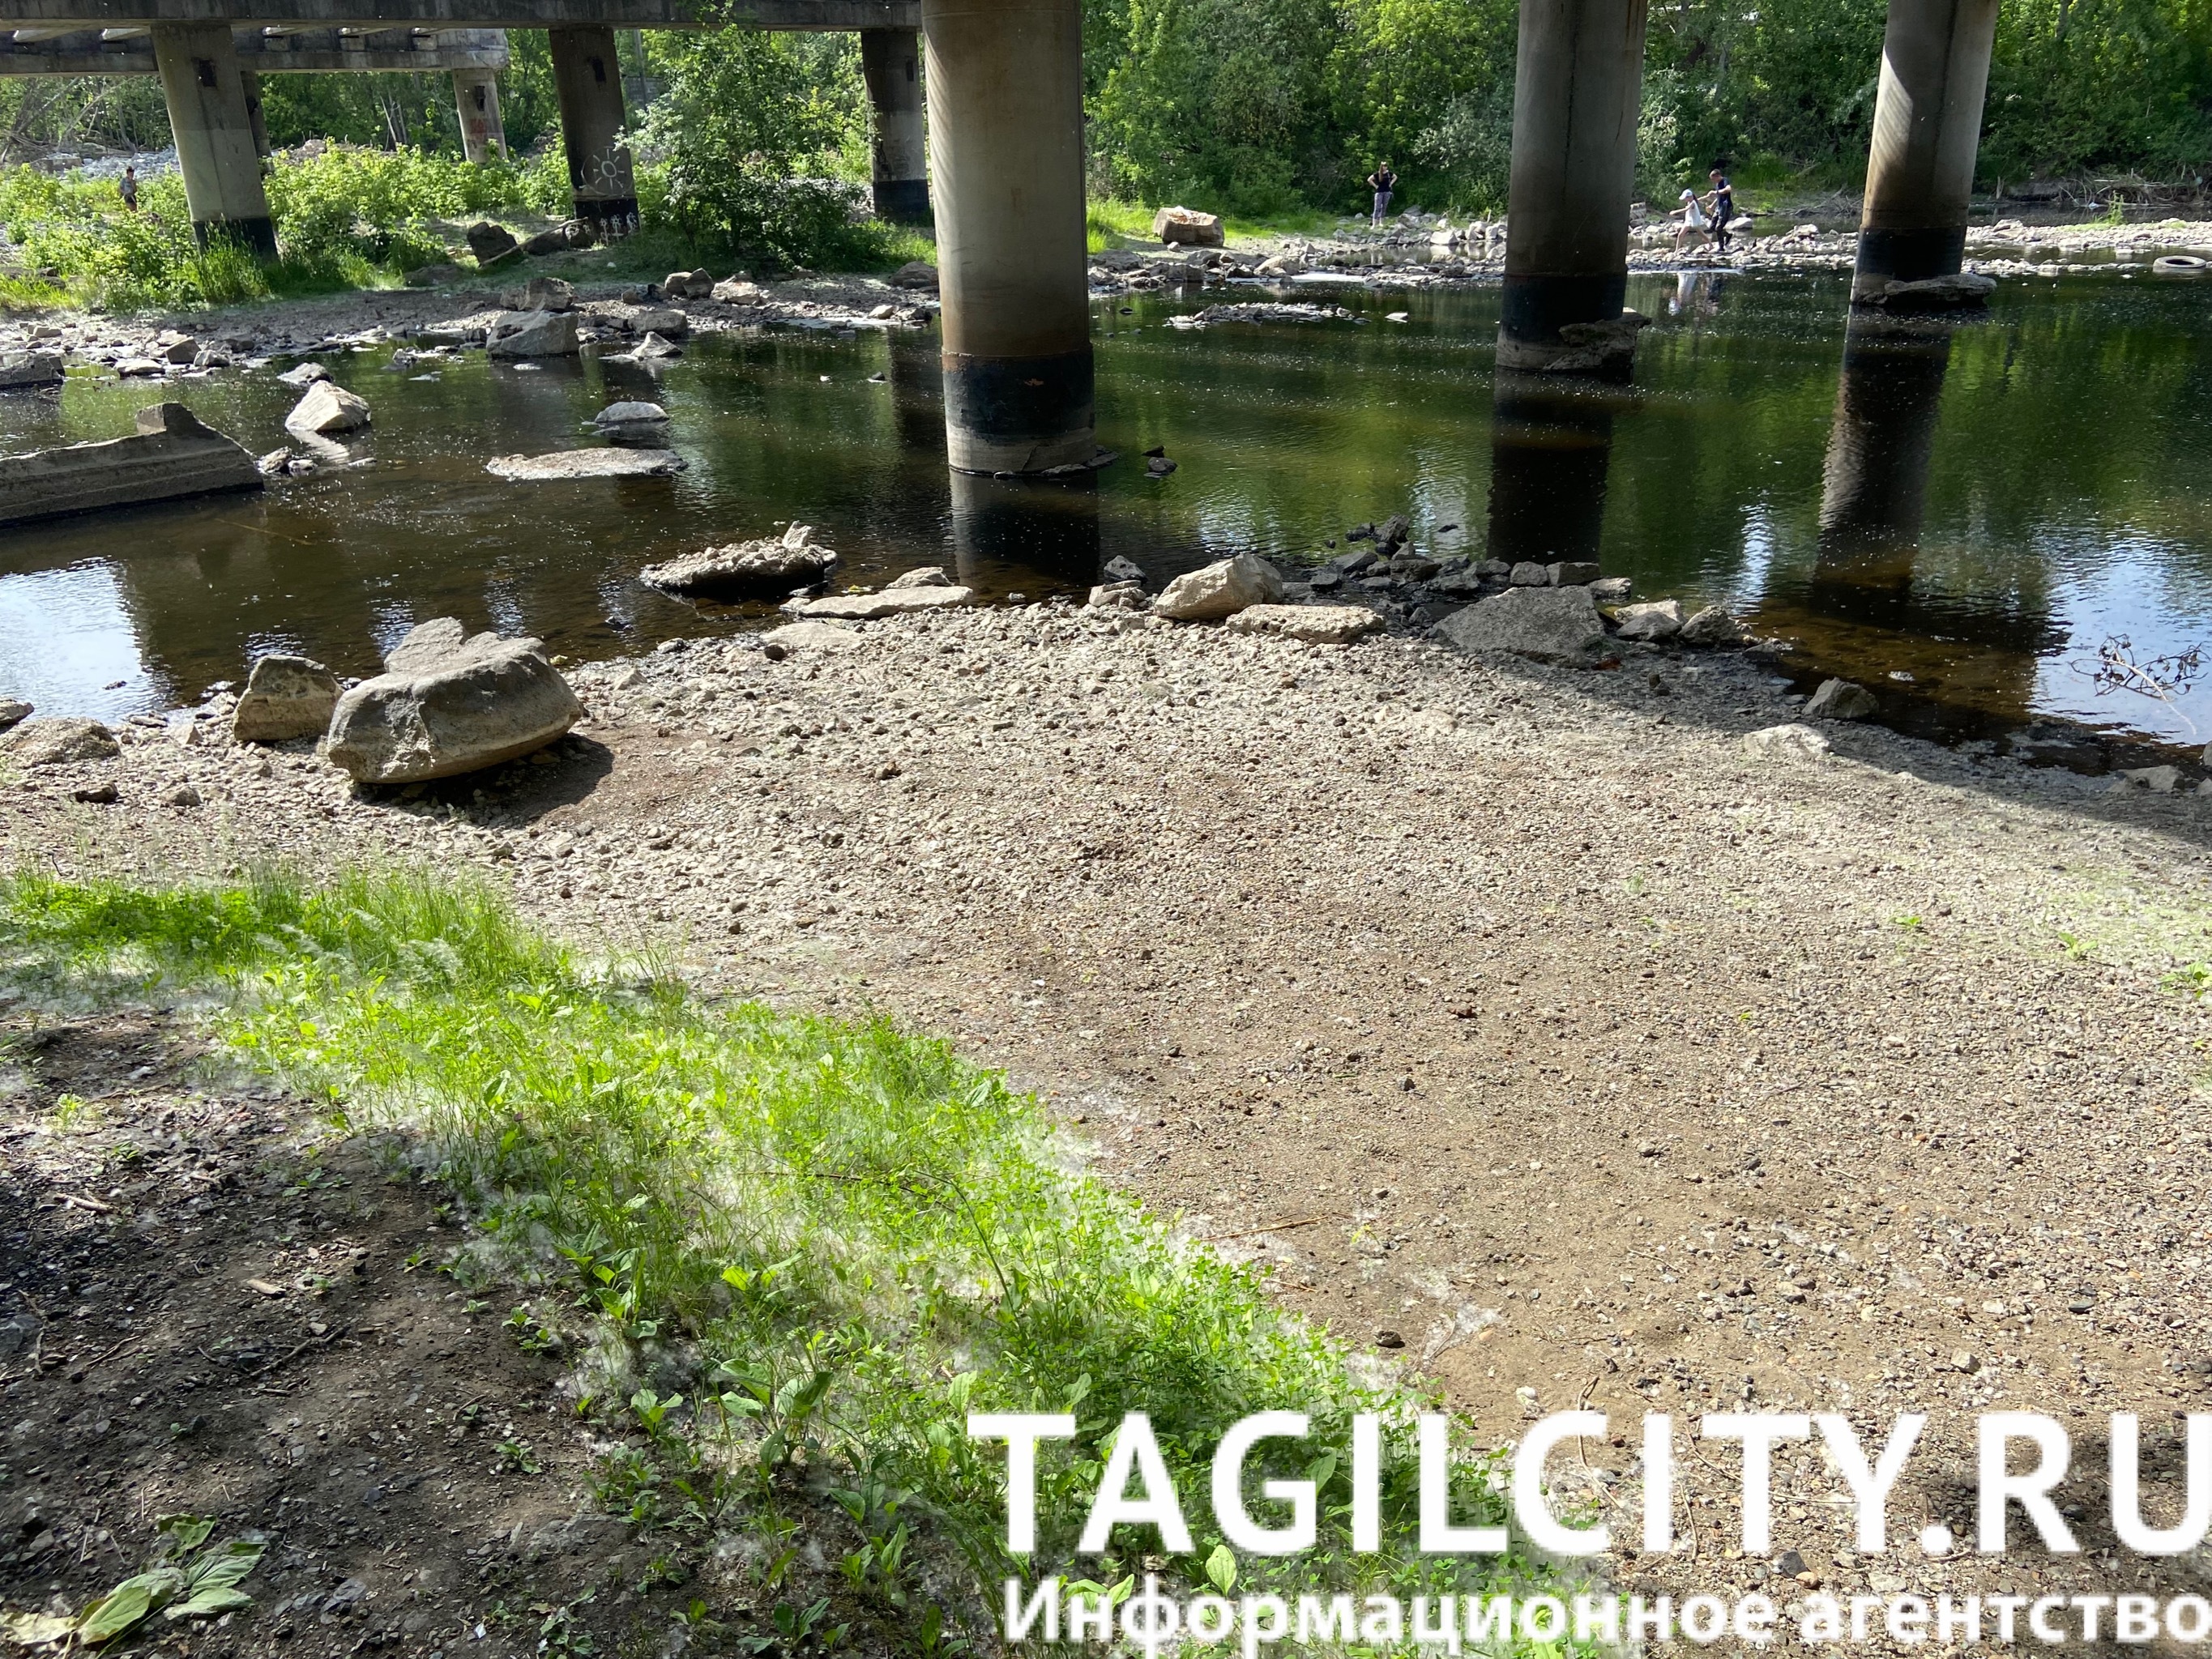 Река Тагил, по следам на берегу видно, что уровень воды значительно снизился. 